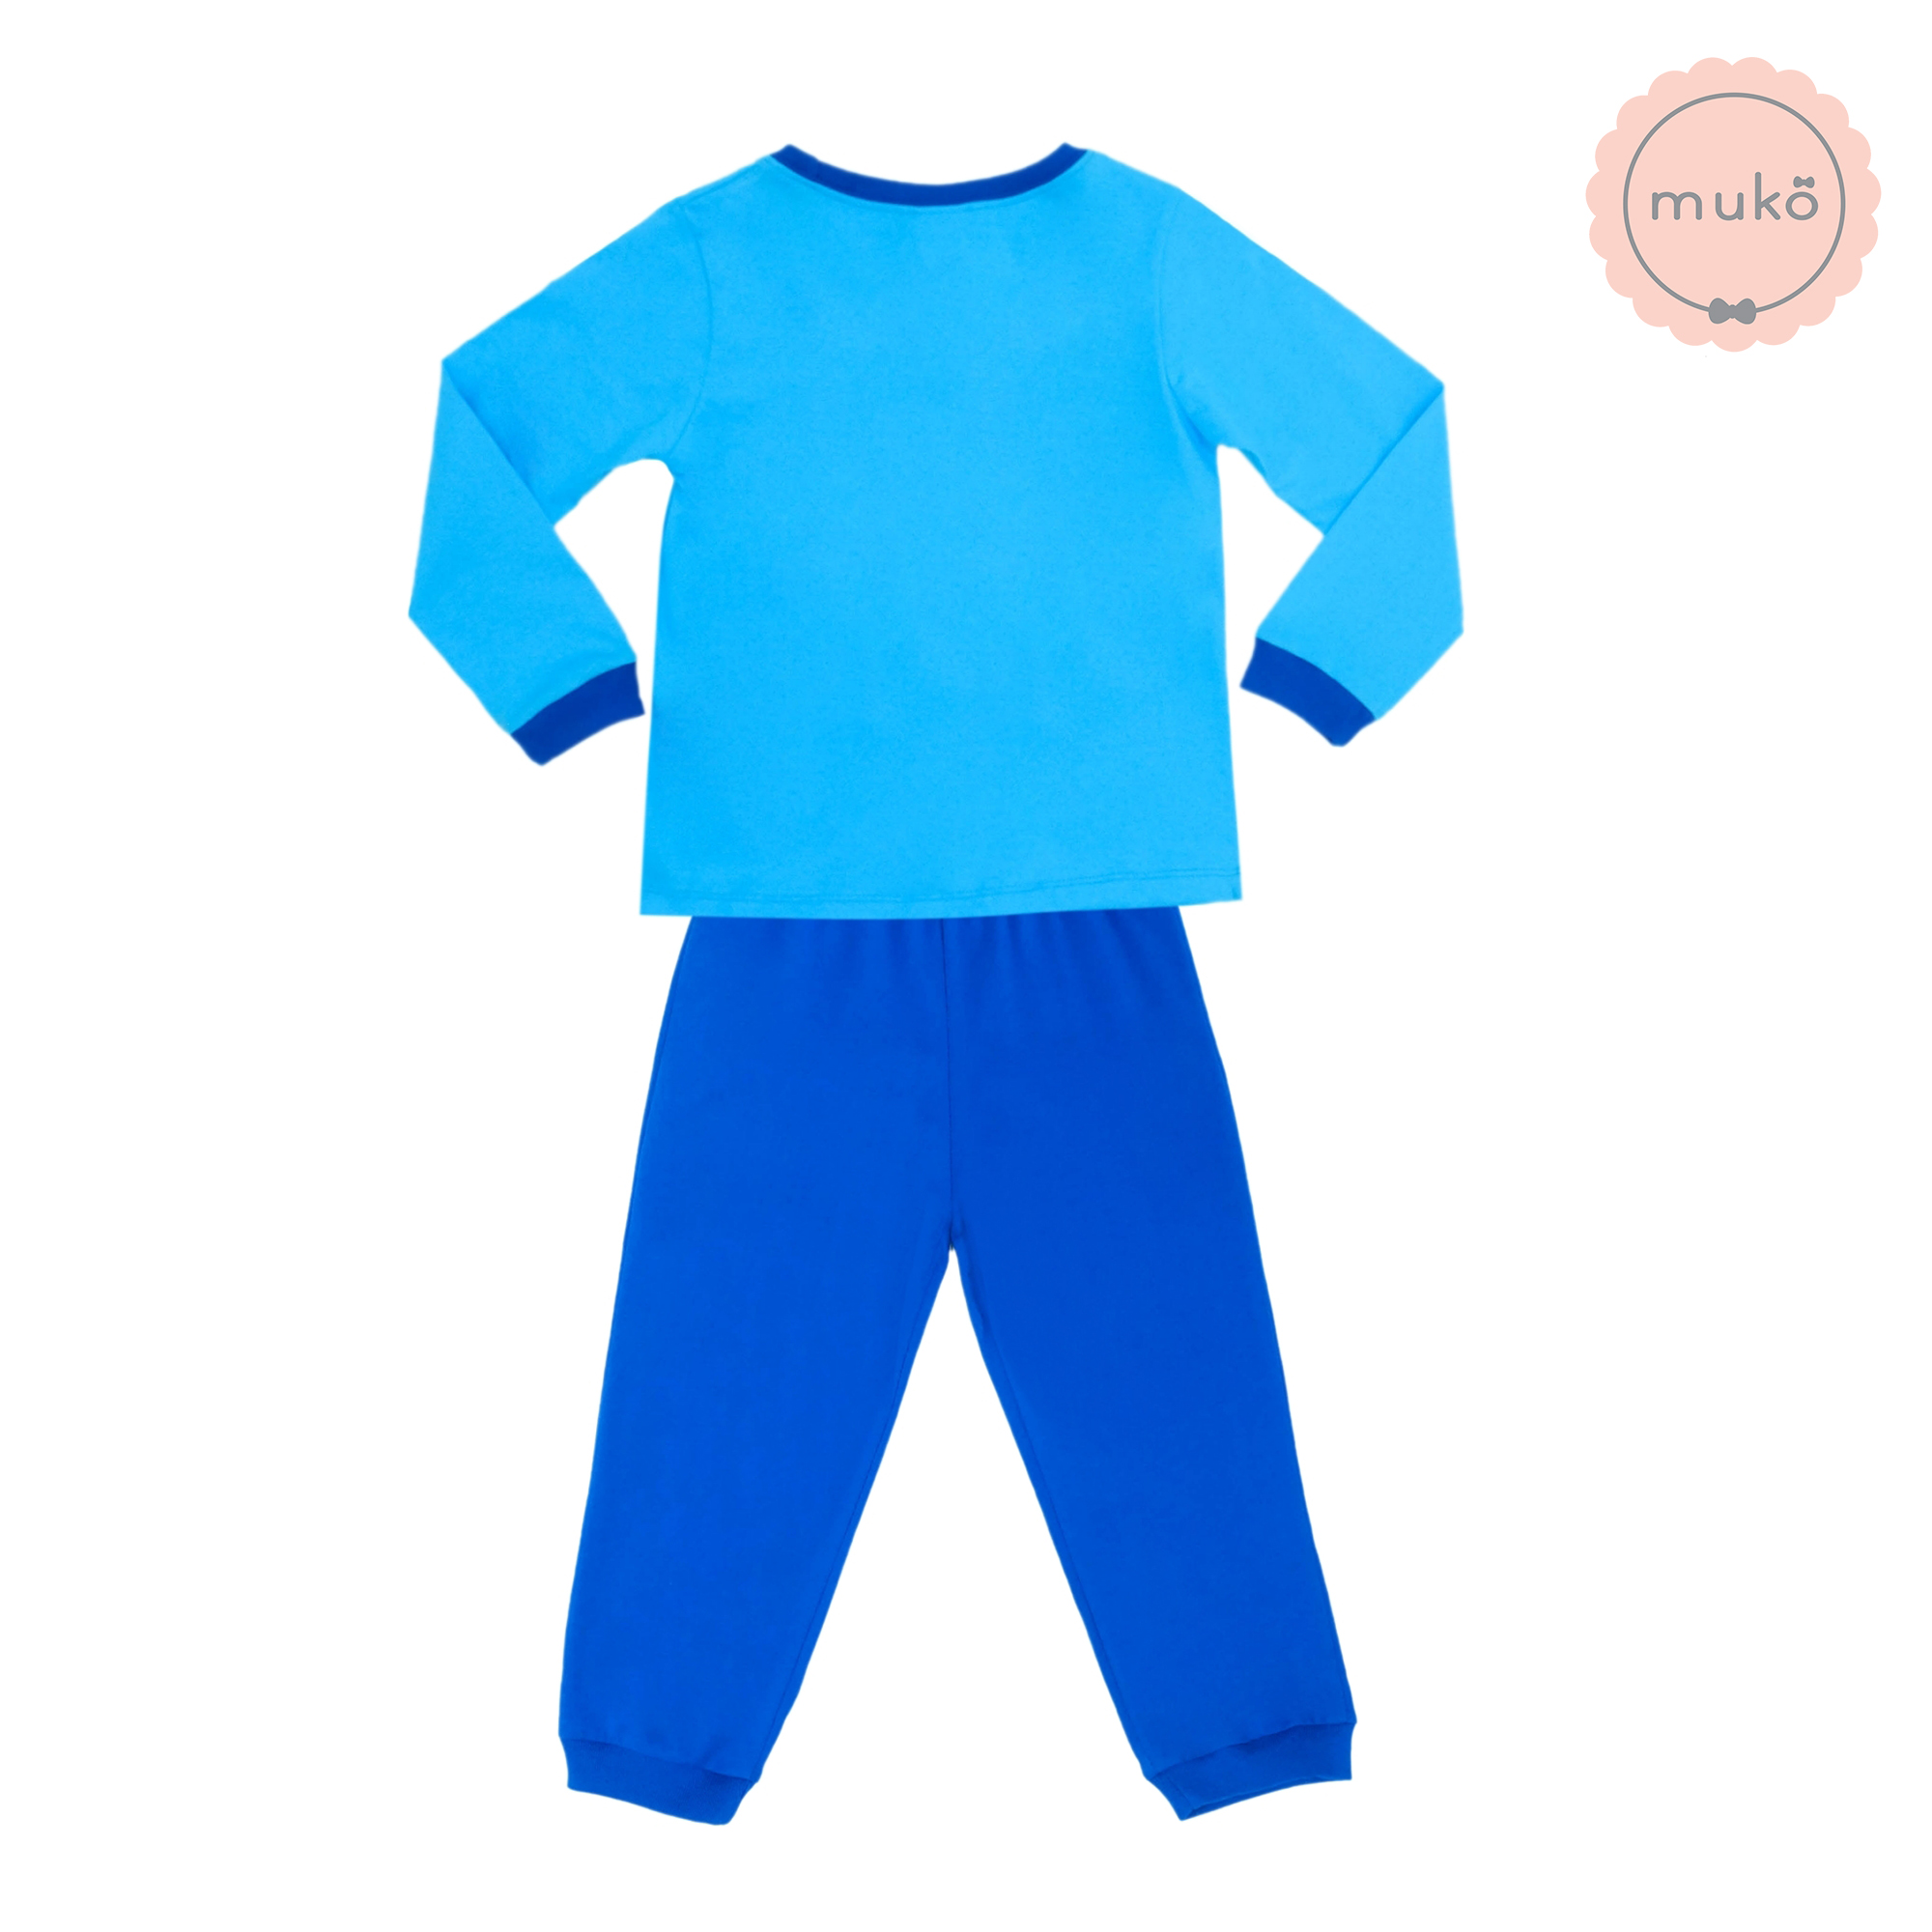 ชุดเด็ก 2-3 ขวบ แขนยาว-ขายาว (Size 3) DPC127-02-3-Blue 3 ลายเจ้าหญิงสโนไวท์ Snow white สีฟ้า (เสื้อฟ้ากางเกงน้ำเงิน)